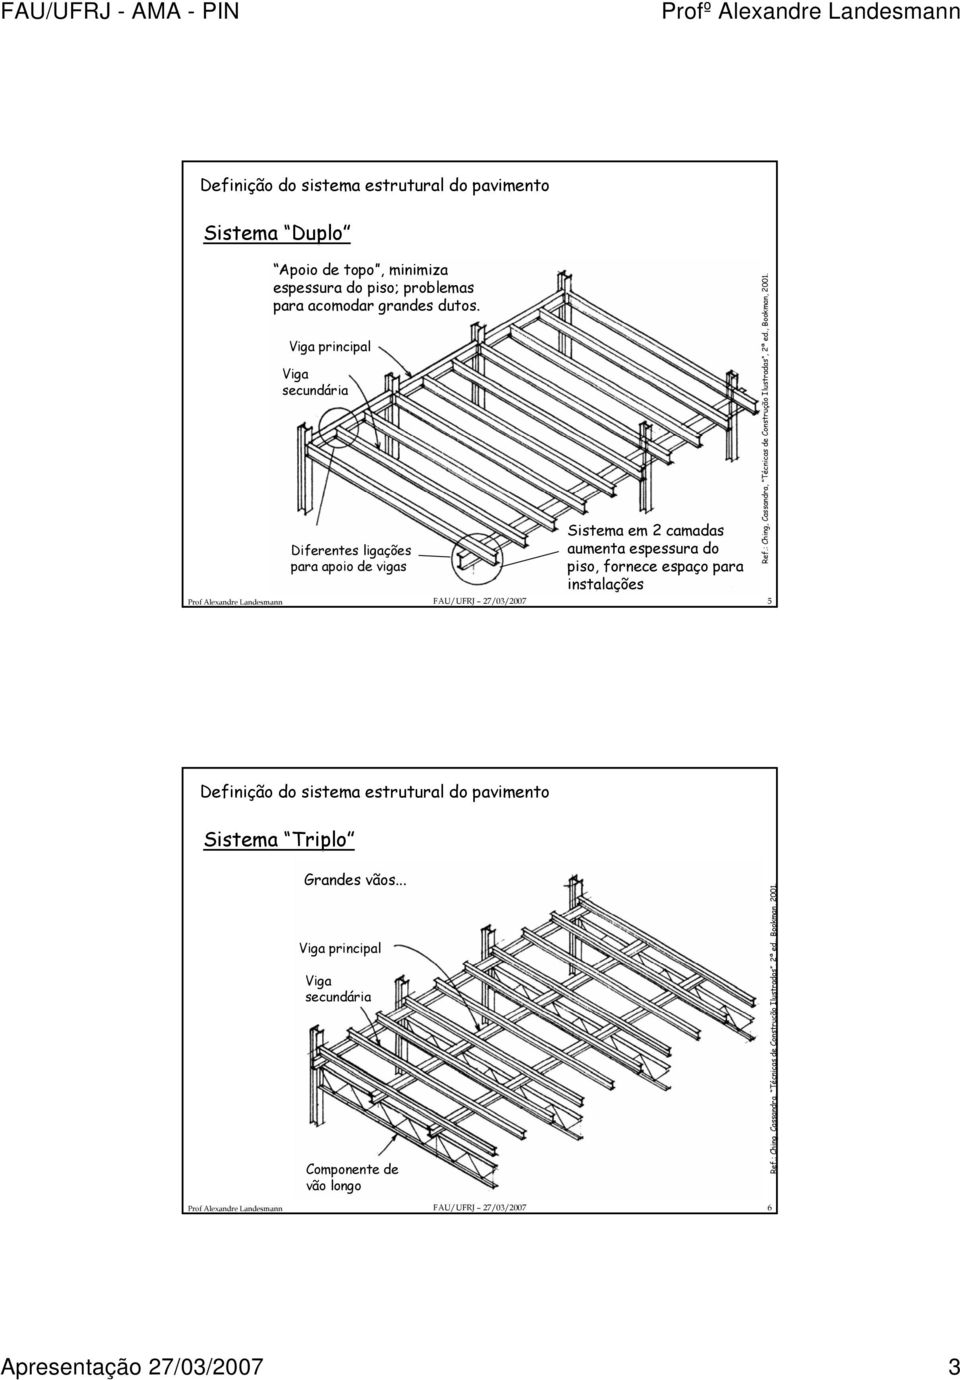 FAU/UFRJ 27/03/2007 5 Ref.: Ching, Cassandra, Técnicas de Construção Ilustradas, 2ª ed., Bookman, 2001. Definição do sistema estrutural do pavimento Sistema Triplo Grandes vãos.